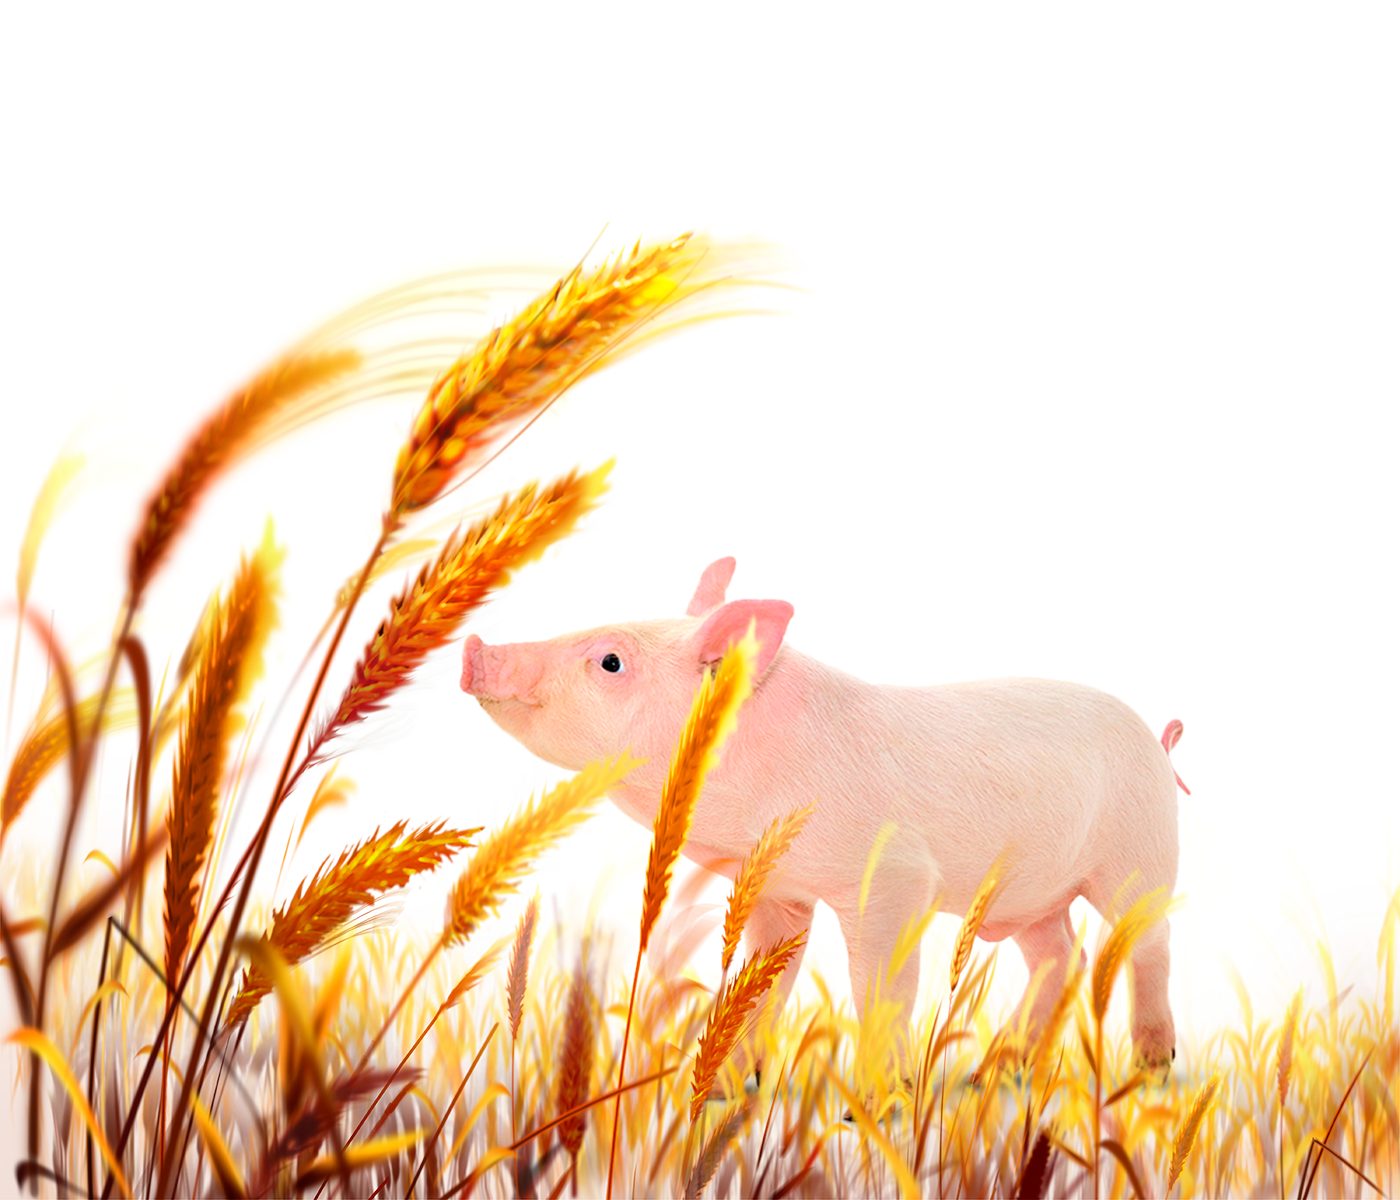 Fibra dietética y su efecto en el rendimiento y bienestar del cerdo – Parte II